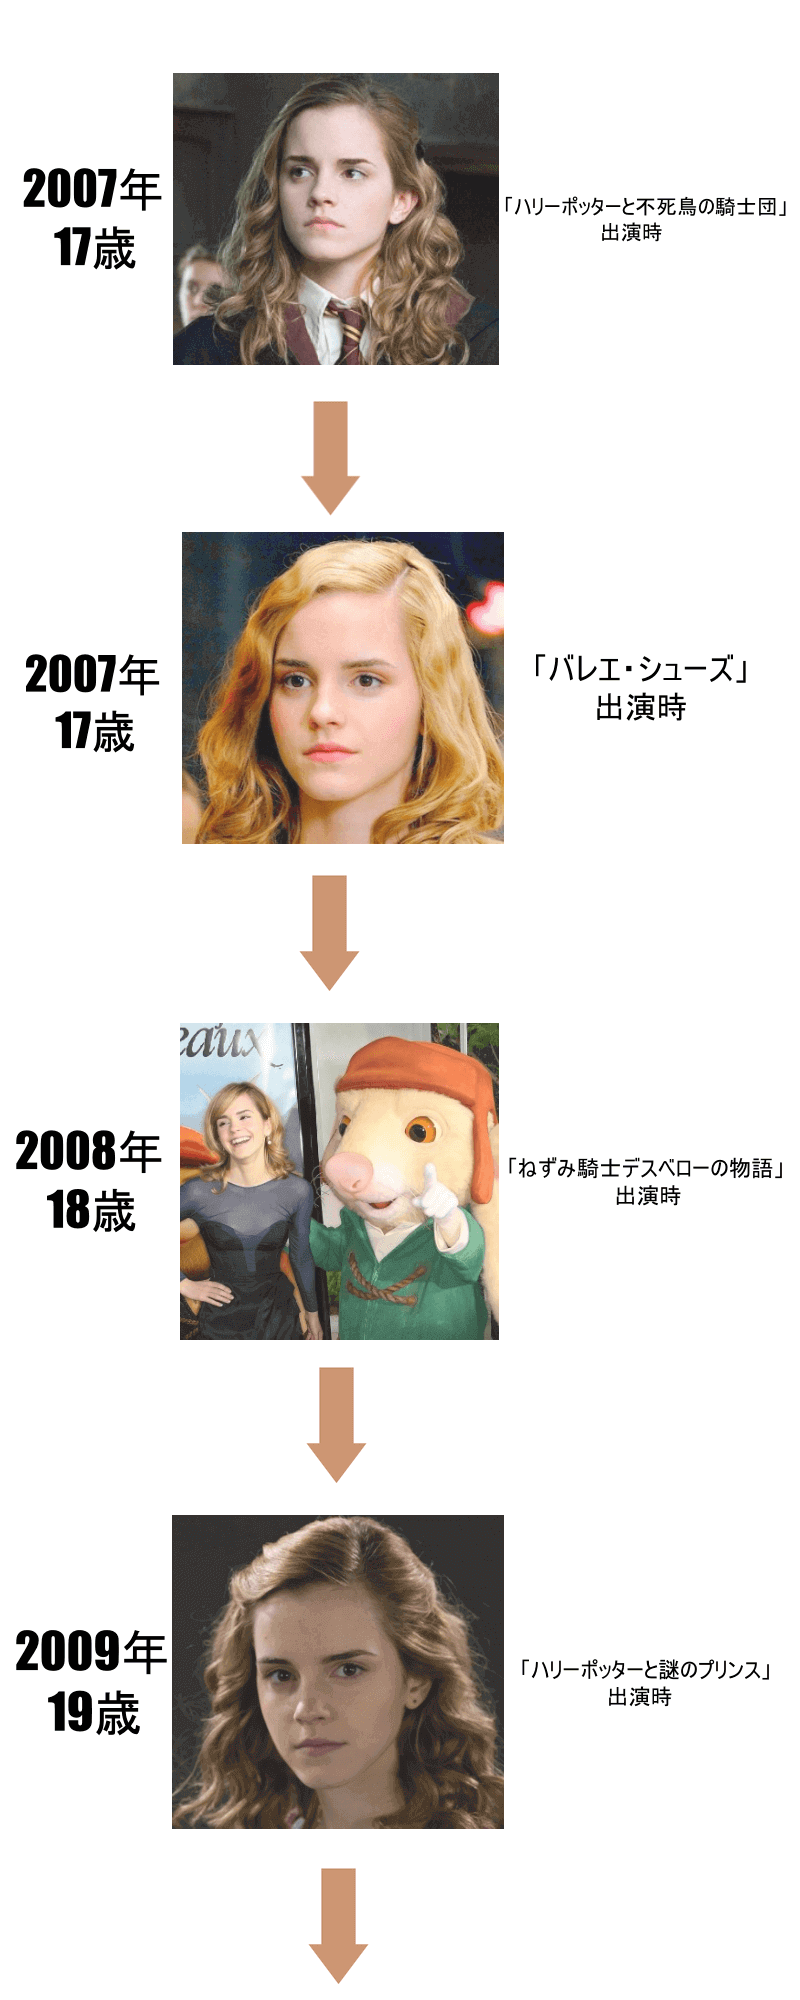 エマワトソンの子役時代から現在まで歴史2007年～2009年